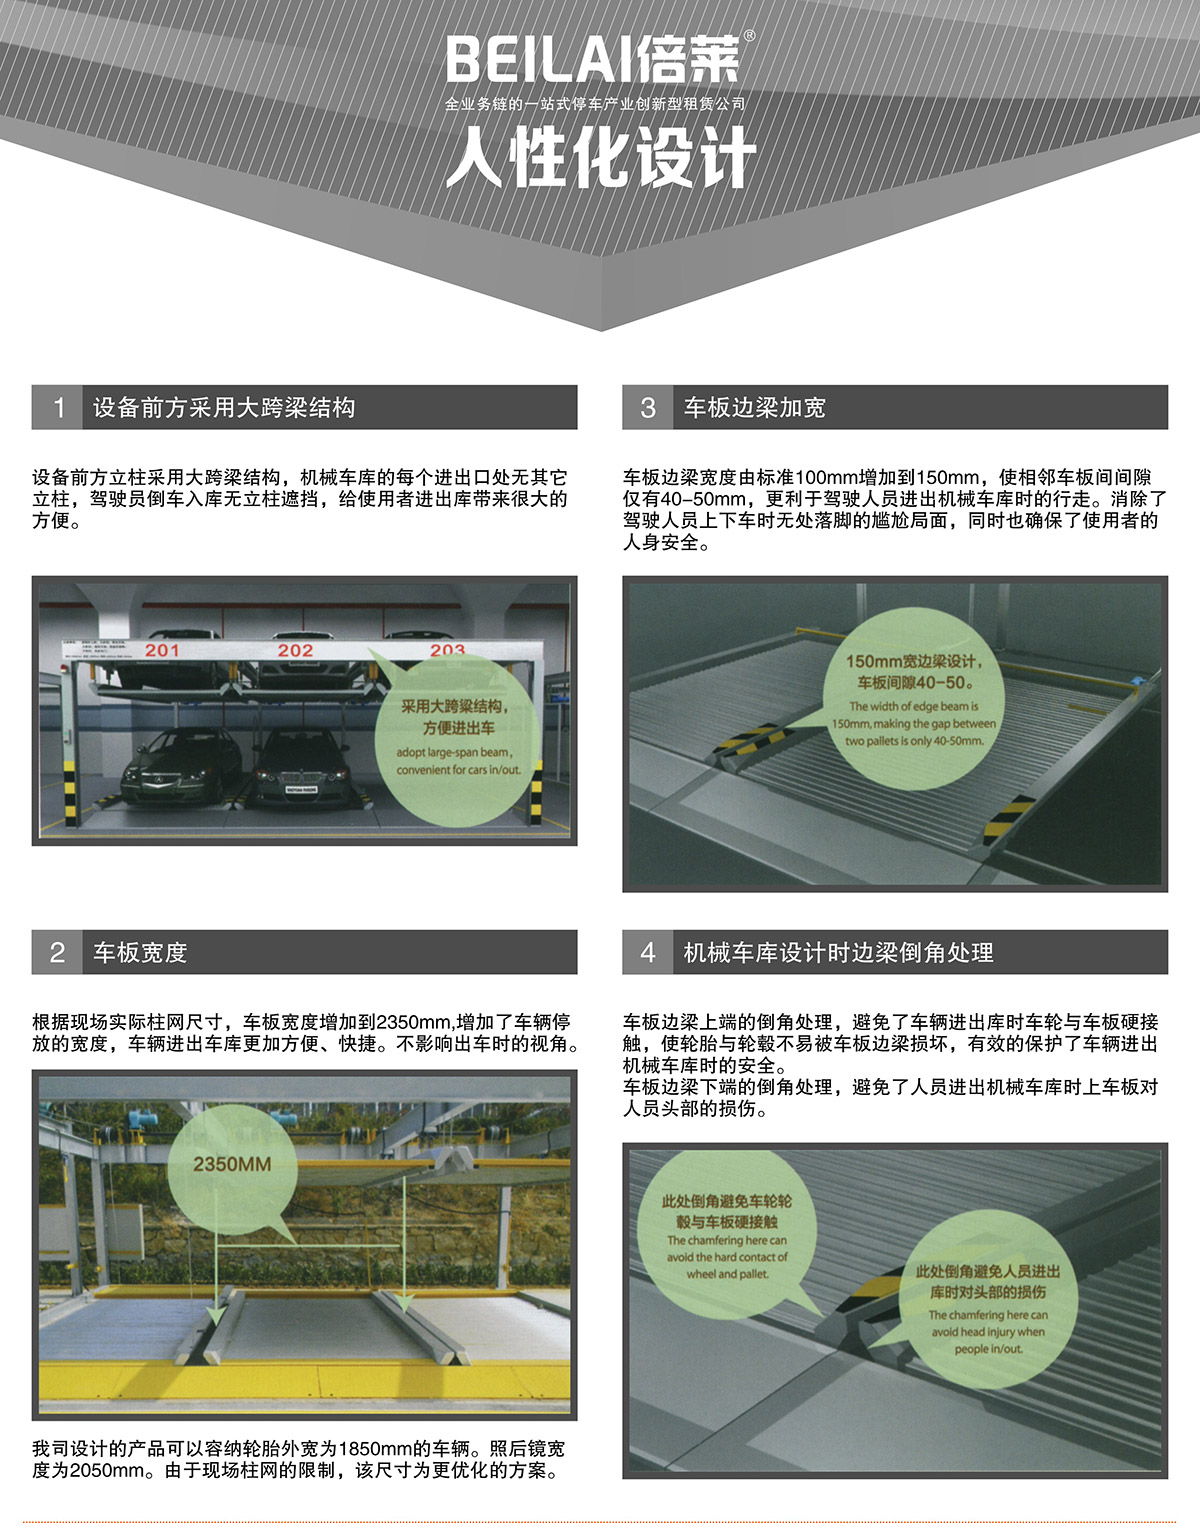 四川成都PSH2两层升降横移类机械式立体车库设备人性化设计.jpg